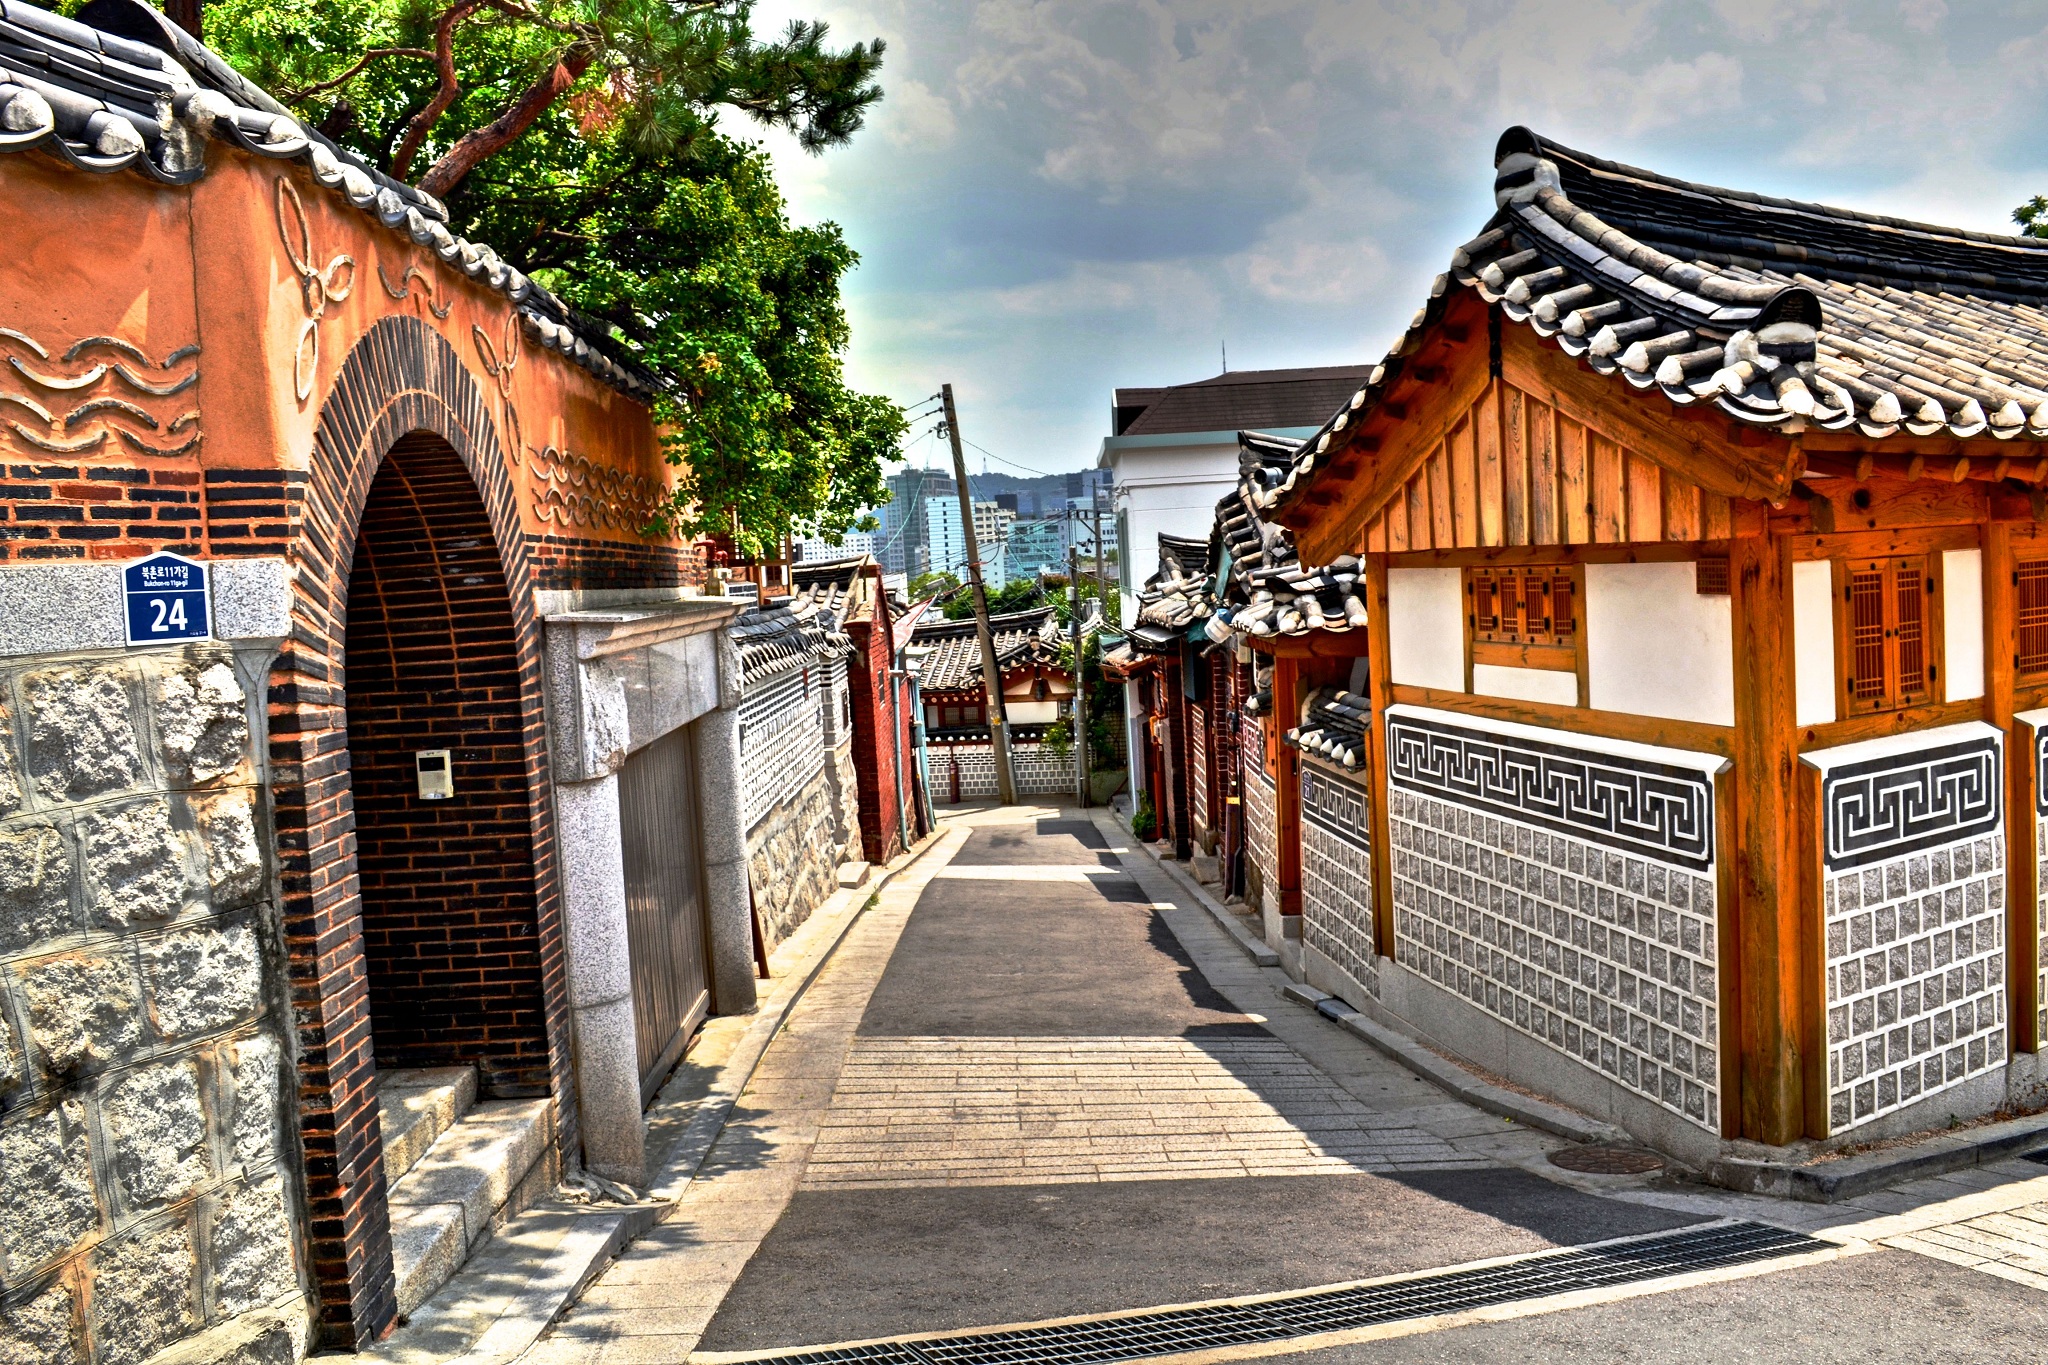 Seoul đẹp: Thủ đô của Hàn Quốc là một trong những thành phố phát triển nhất châu Á. Seoul có nhiều địa điểm du lịch nổi tiếng và đẹp như Namsan Tower, Gyeongbokgung Palace, Banpo Bridge, Myeong-dong, Dongdaemun Shopping Complex, trung tâm sản xuất K-Pop... Hãy cùng khám phá vẻ đẹp mê hồn của Seoul.